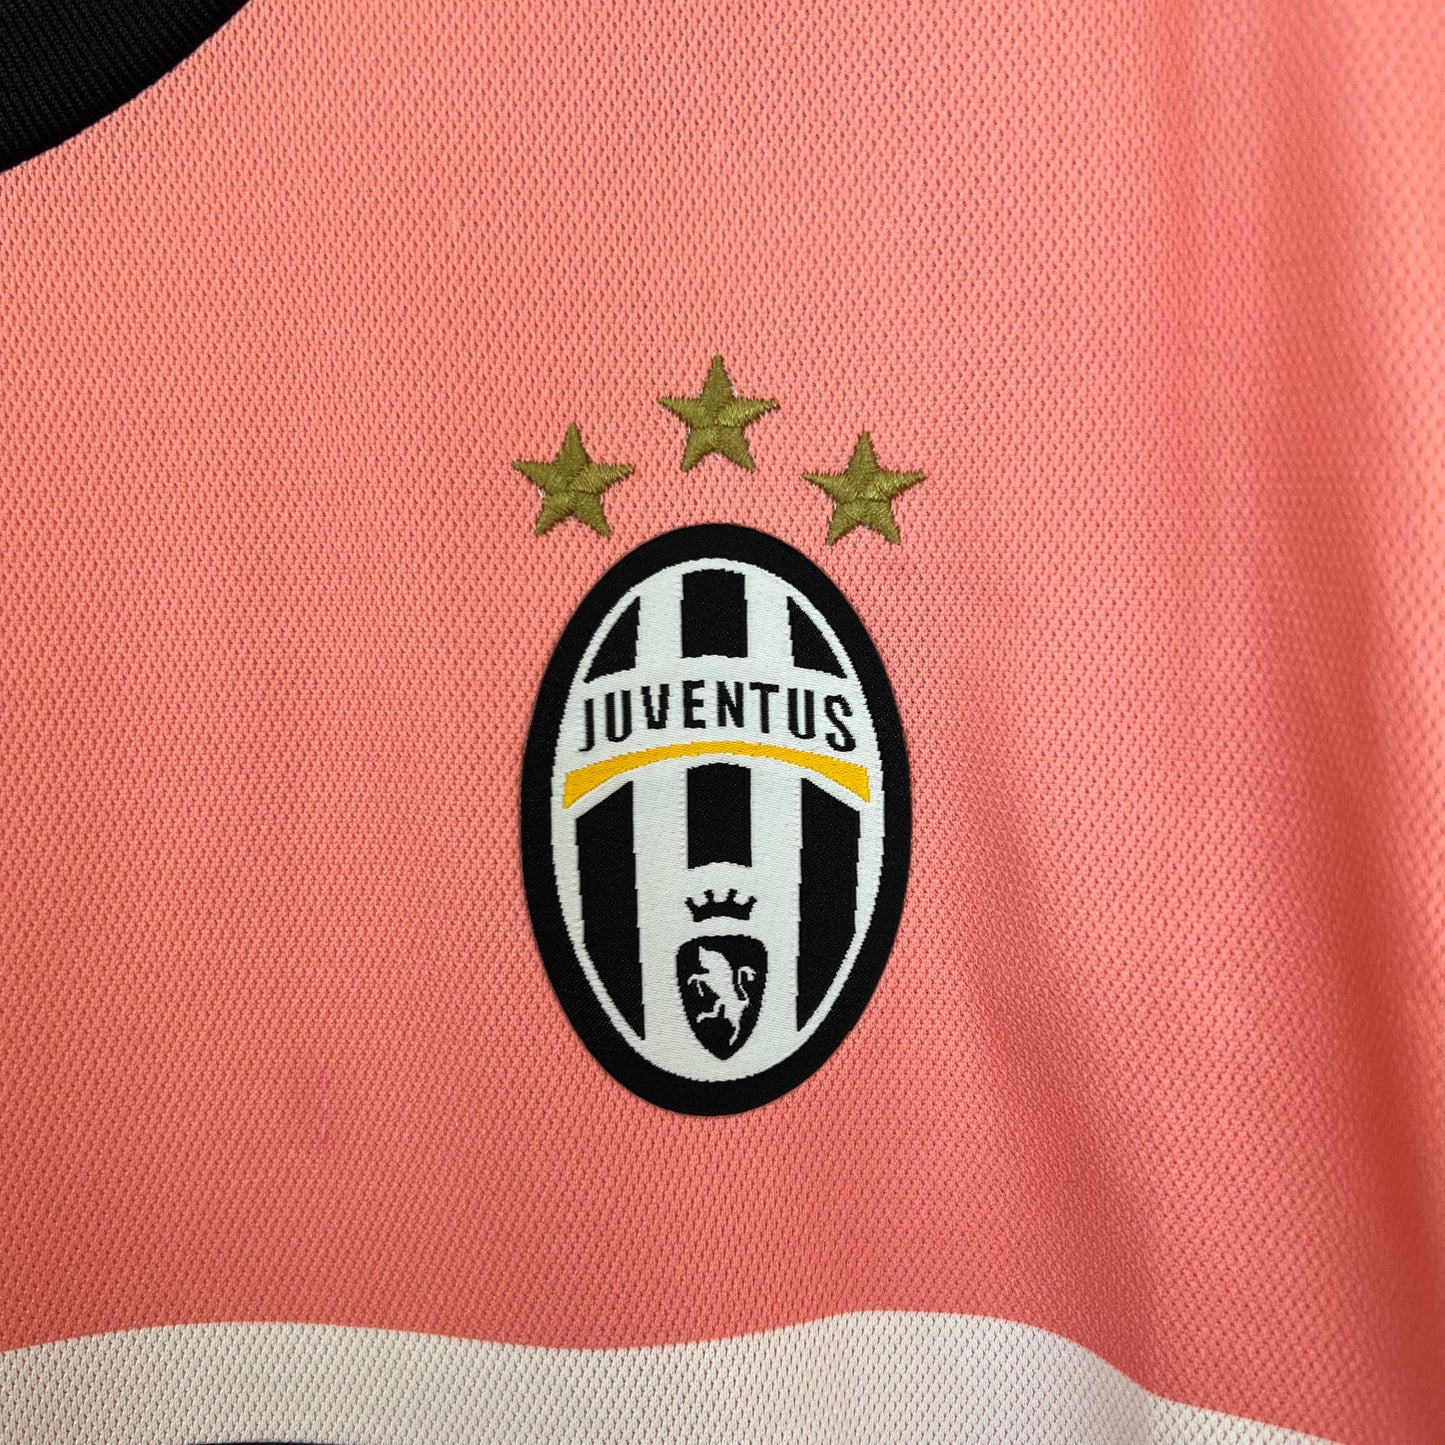 Juventus 2015/16 Away Jersey